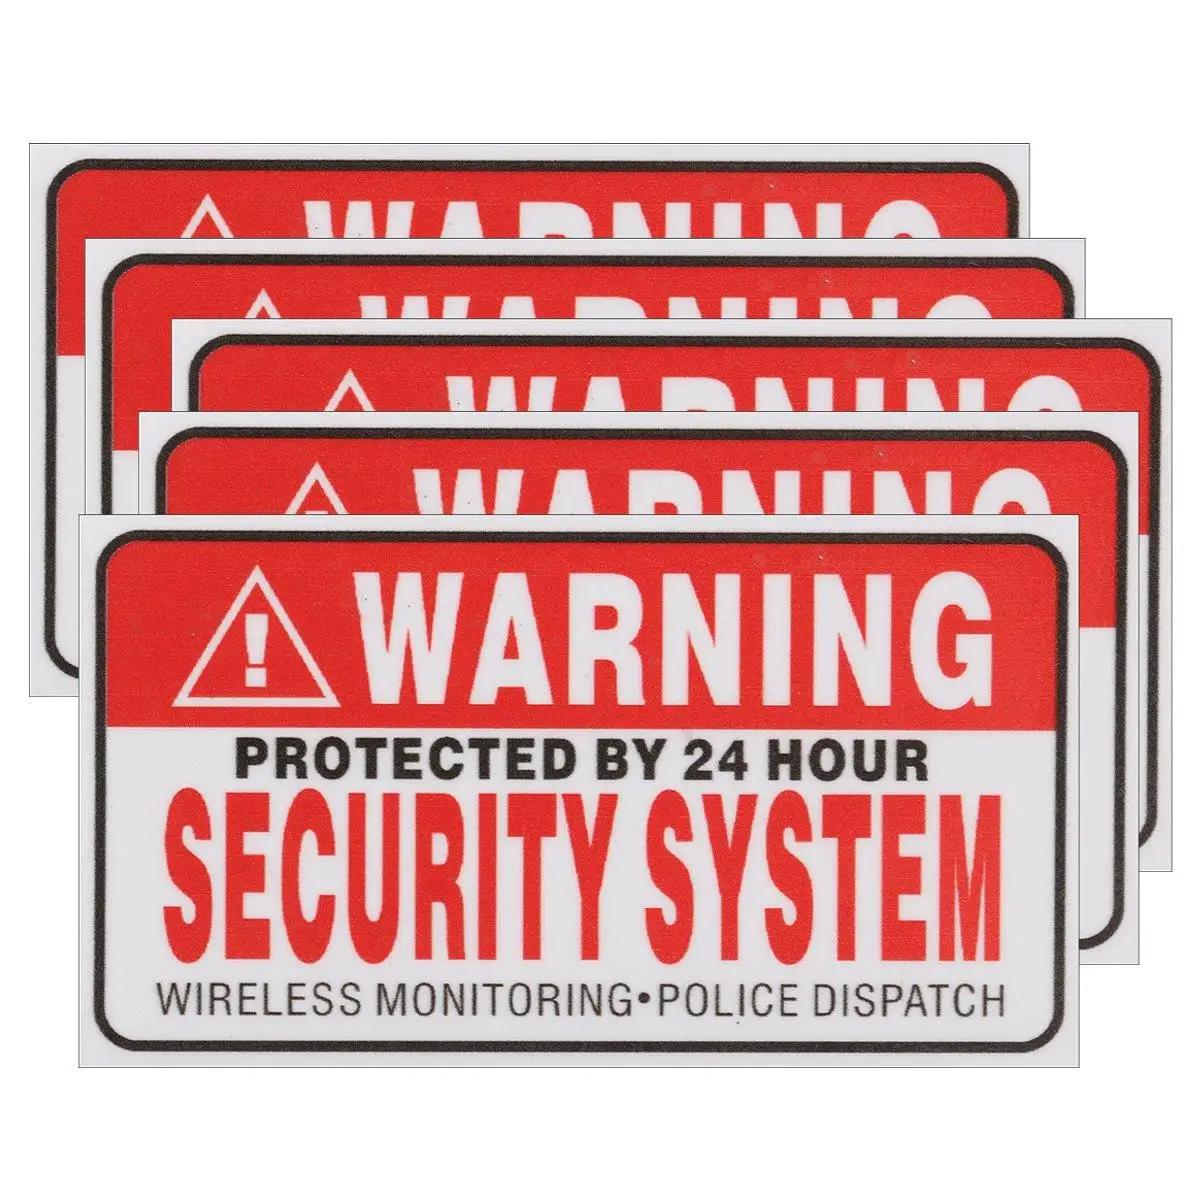 5 шт./компл. Предупреждение защищены охрана 24 часа в сутки, Системы наклейки безопасности сигнализация знаки наклейка Предупреждение Mark Бизнес 9*5 см стайлинга автомобилей